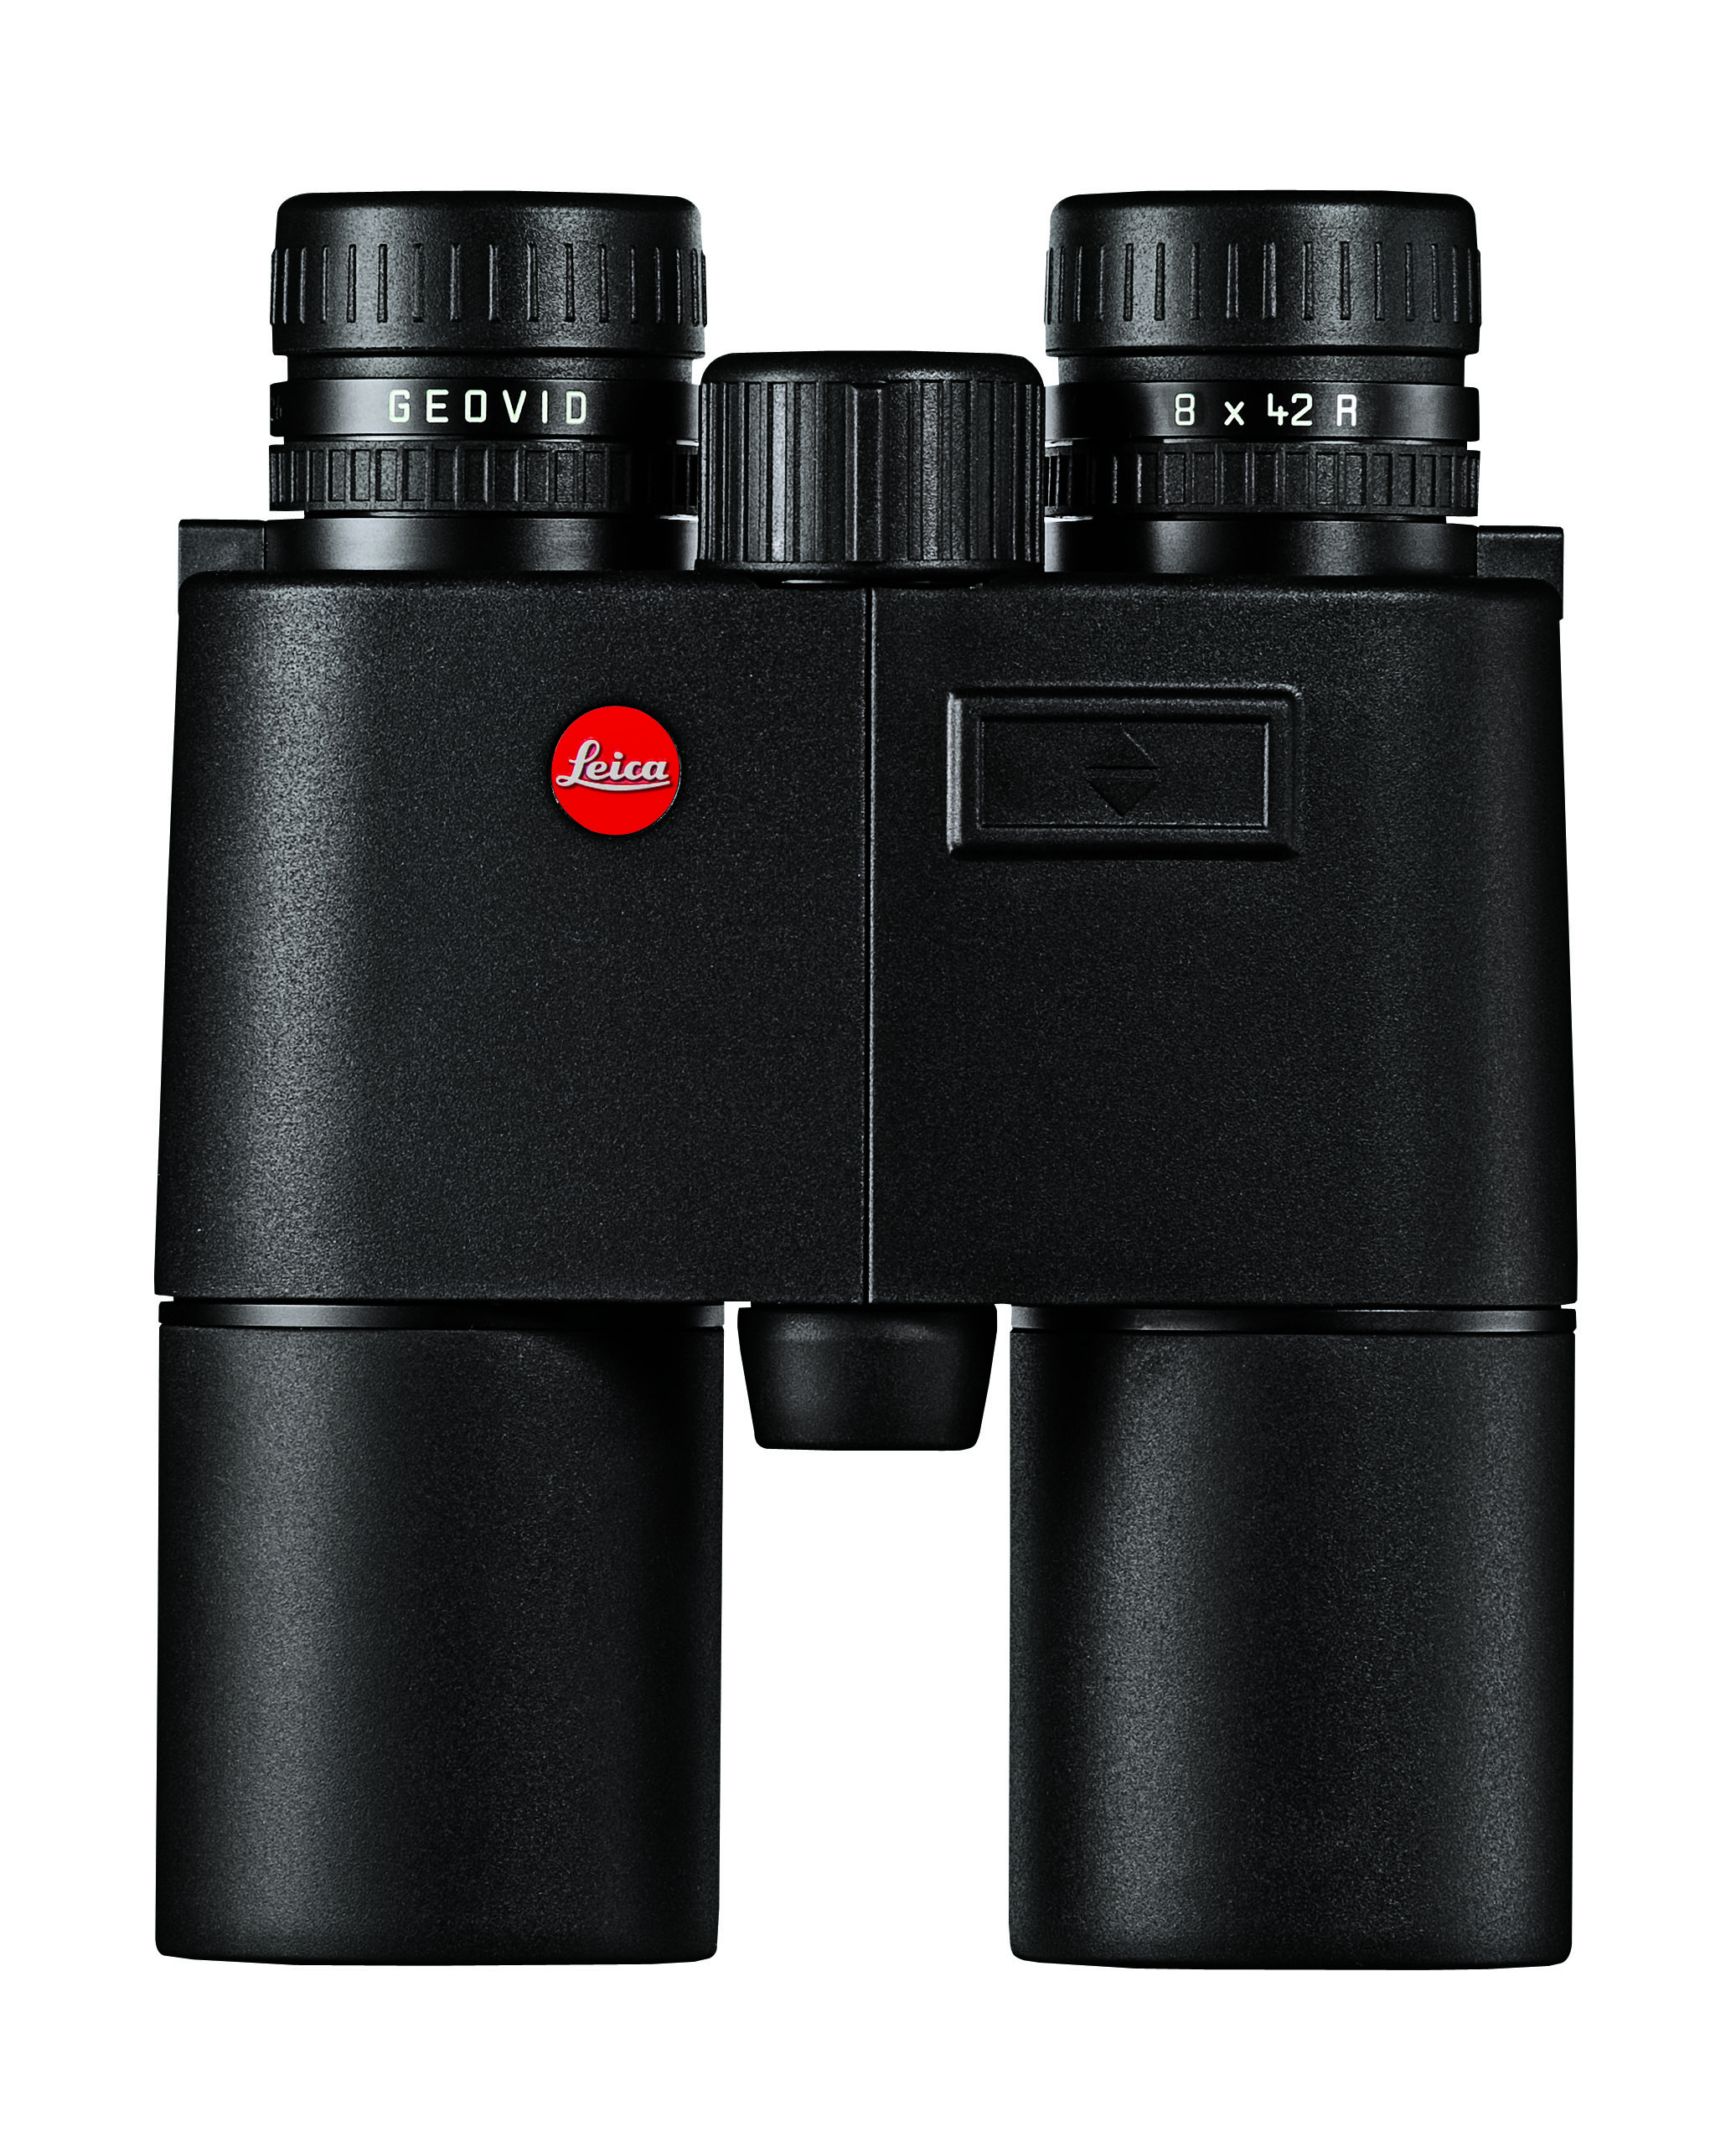 Il Geovid 8x42 R di Leica ha lenti HD, meccanica molto robusta, e funzione di misurazione della distanza compensata con angolo di sito fino alla distanza record di 1100 metri. Prezzo 1795 euro.